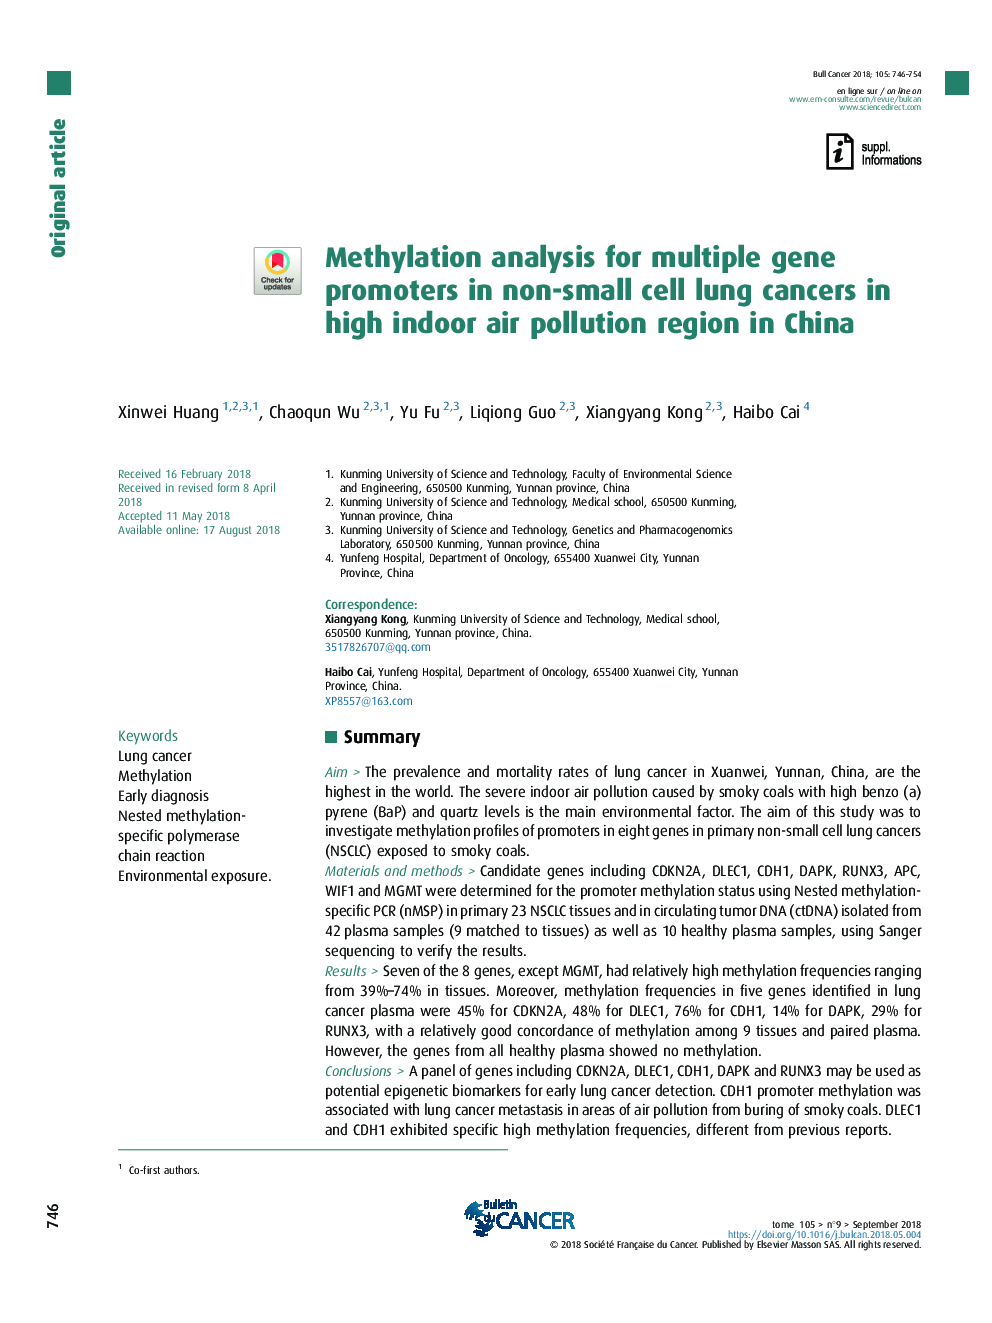 تجزیه متیلاسیون برای پروتئین های چند ژن در سرطان های ریه های غیر سلولی در مناطق آلودگی هوا در داخل کشور در چین